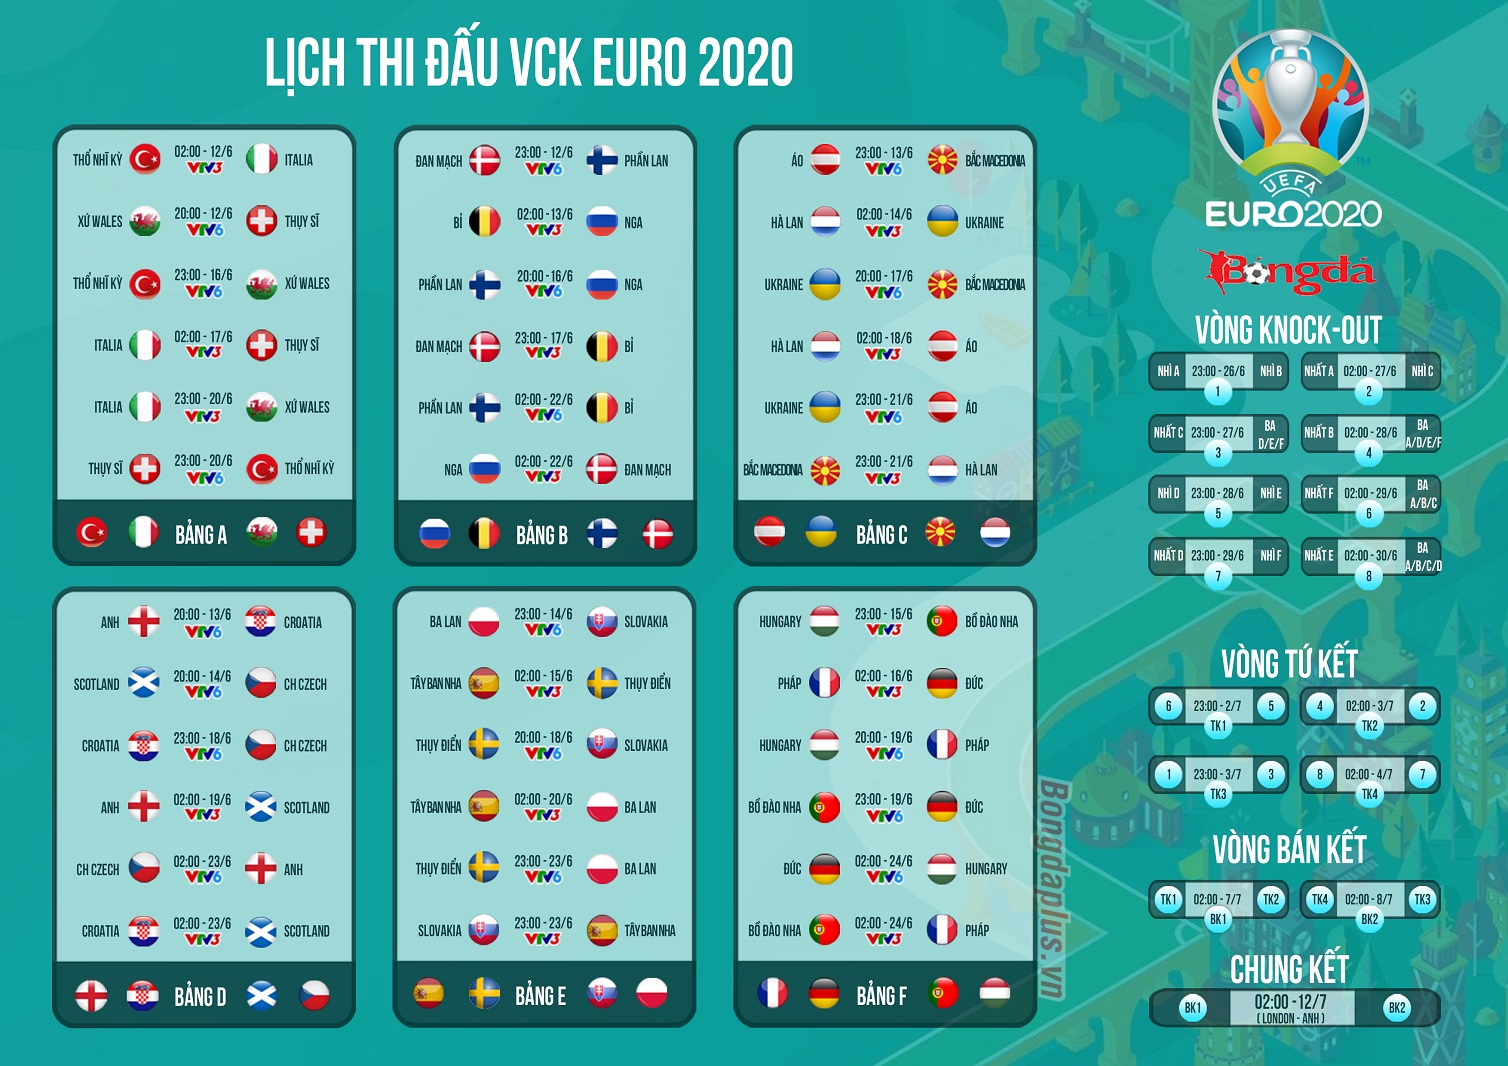 Lịch thi đấu của mùa giải Euro 2020 mà bạn không thể bỏ lỡ